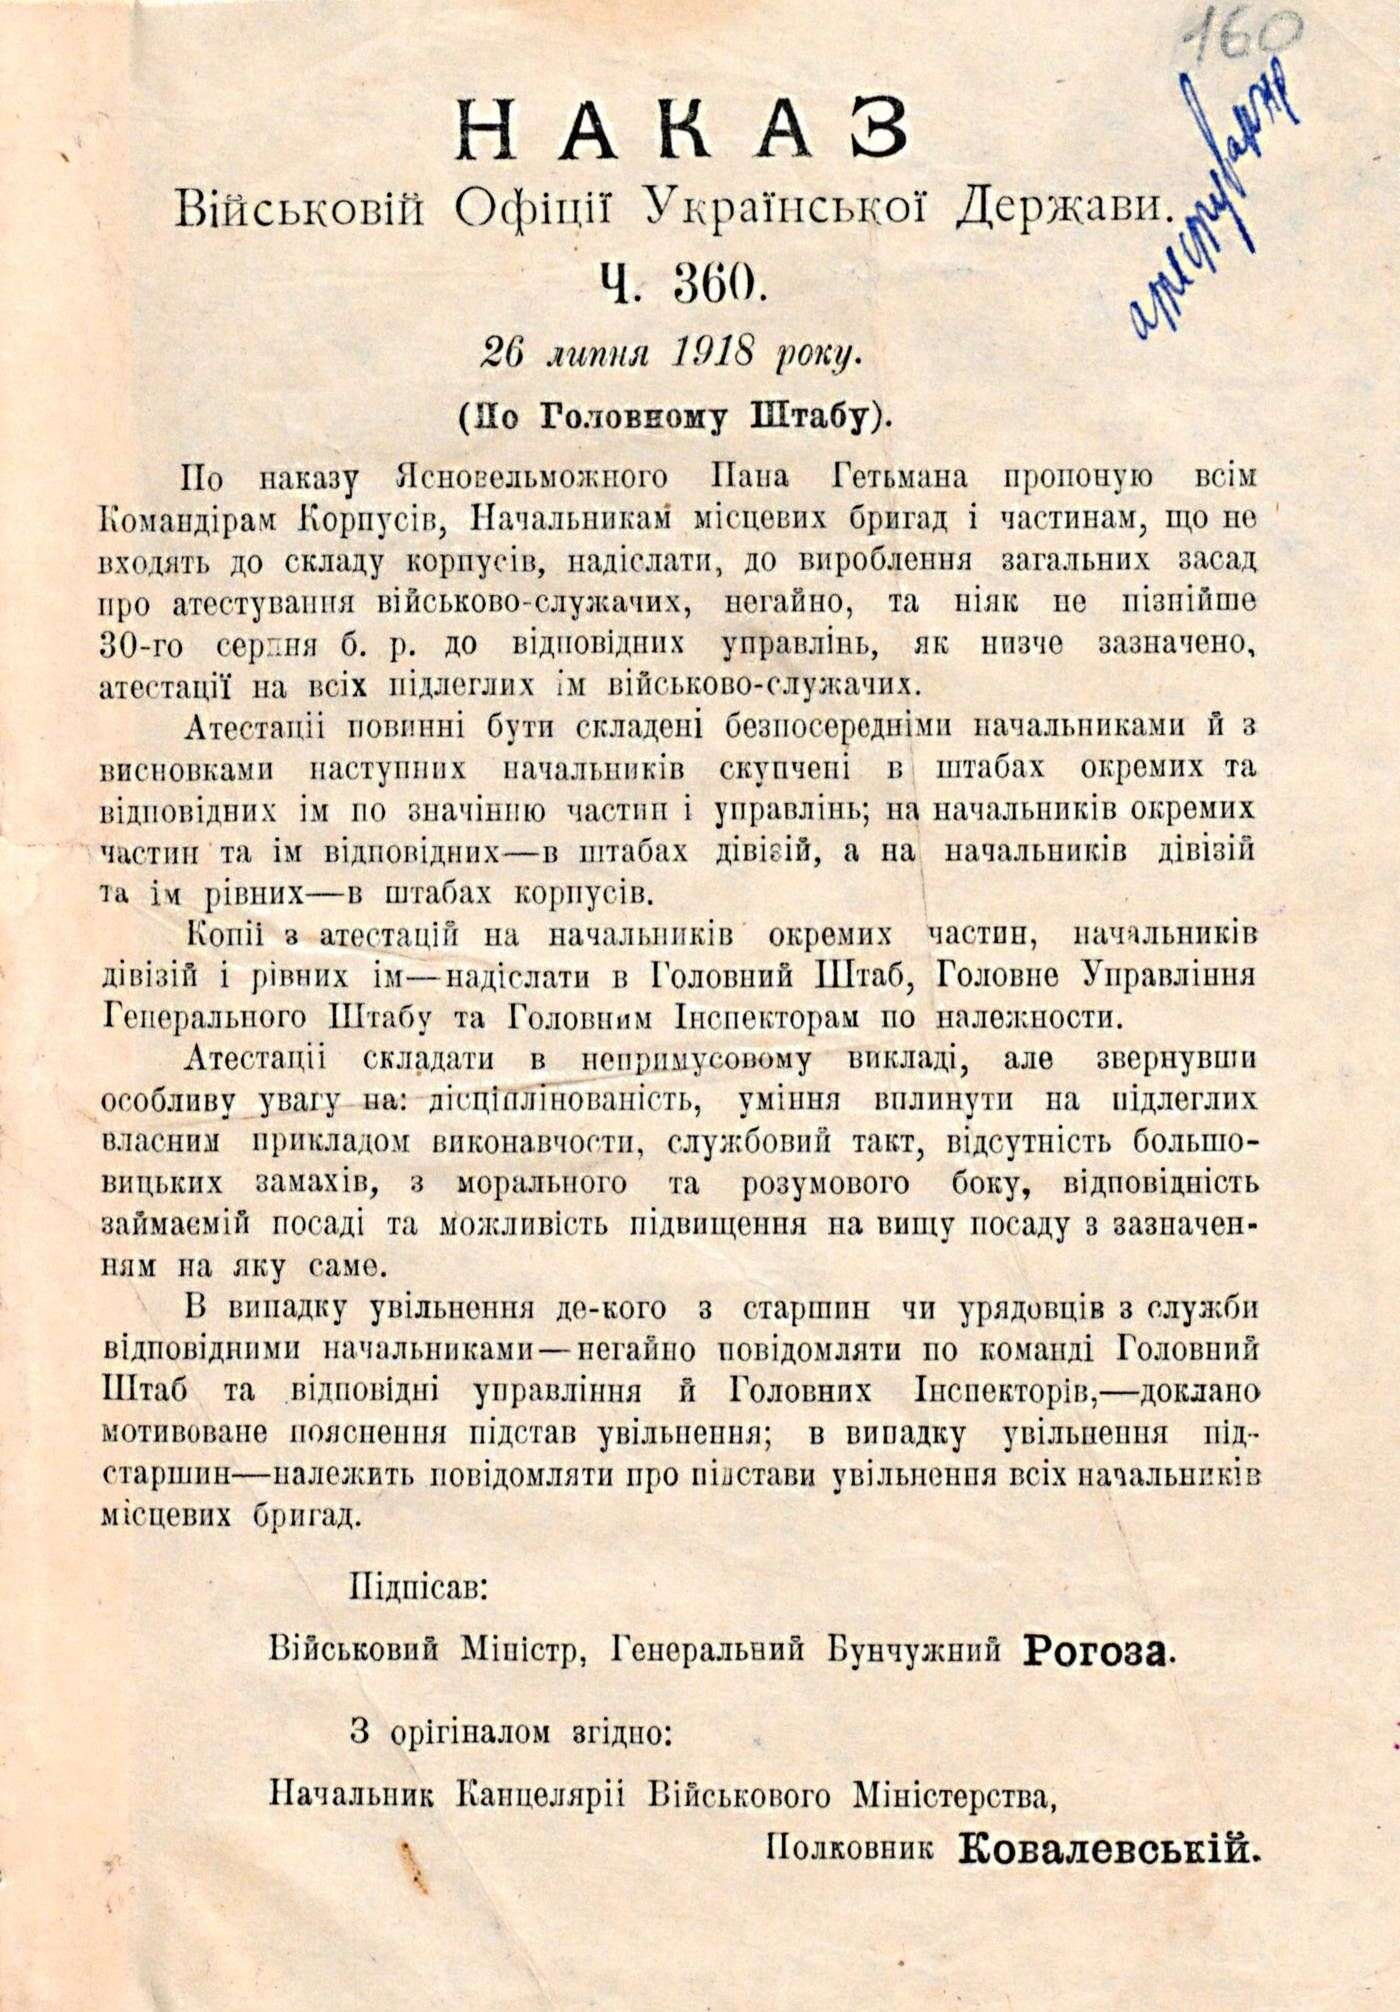 Наказ Військовій офіції Української Держави (ч. 360) про проведення атестації військовослужбовців. 26 липня 1918 р.